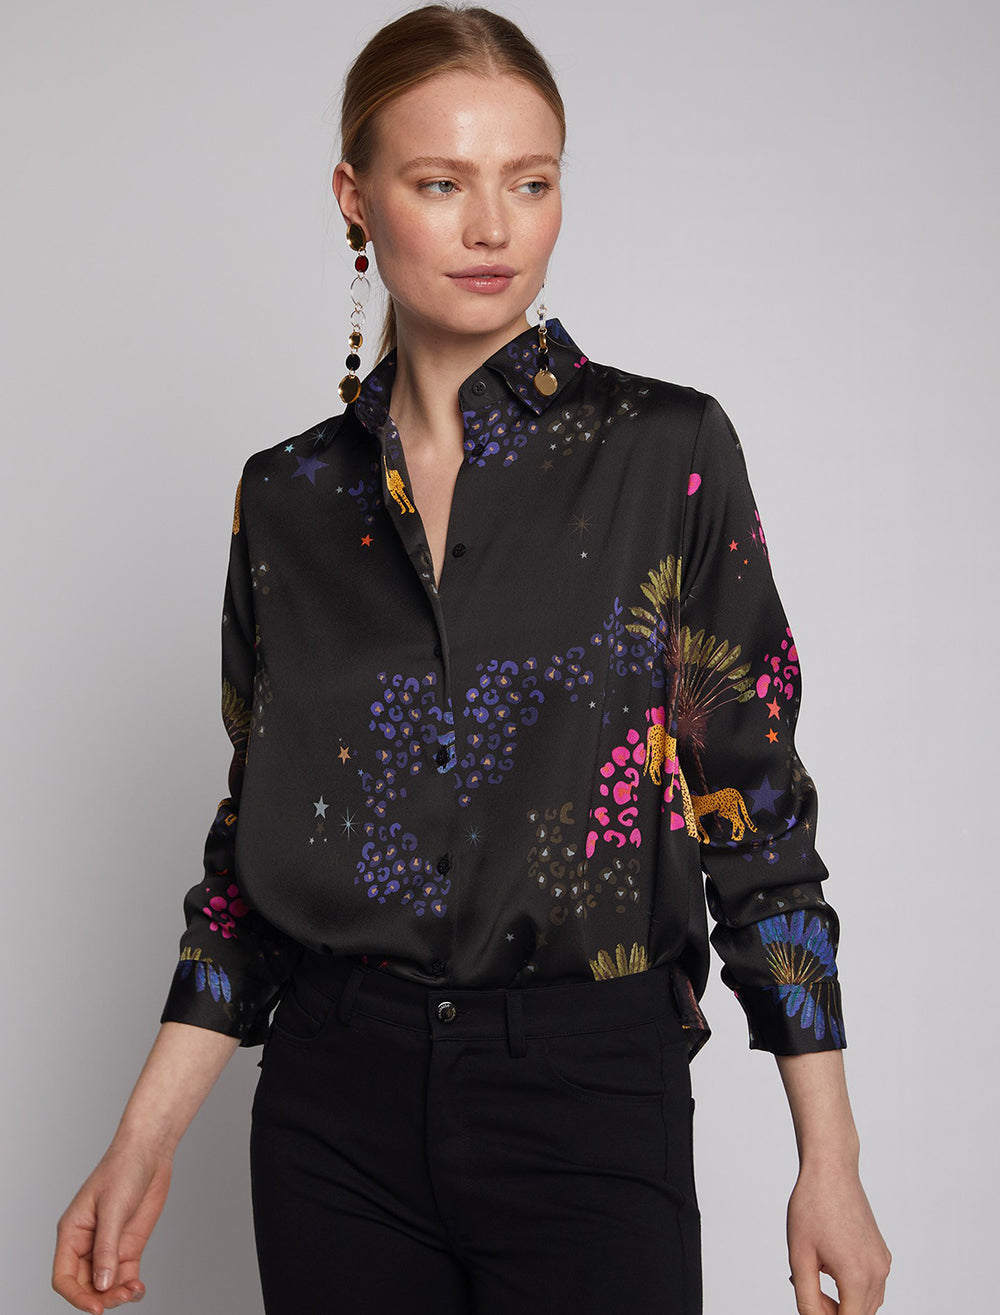 Model wearing Vilagallo's camisa isabella black cheetah blouse.